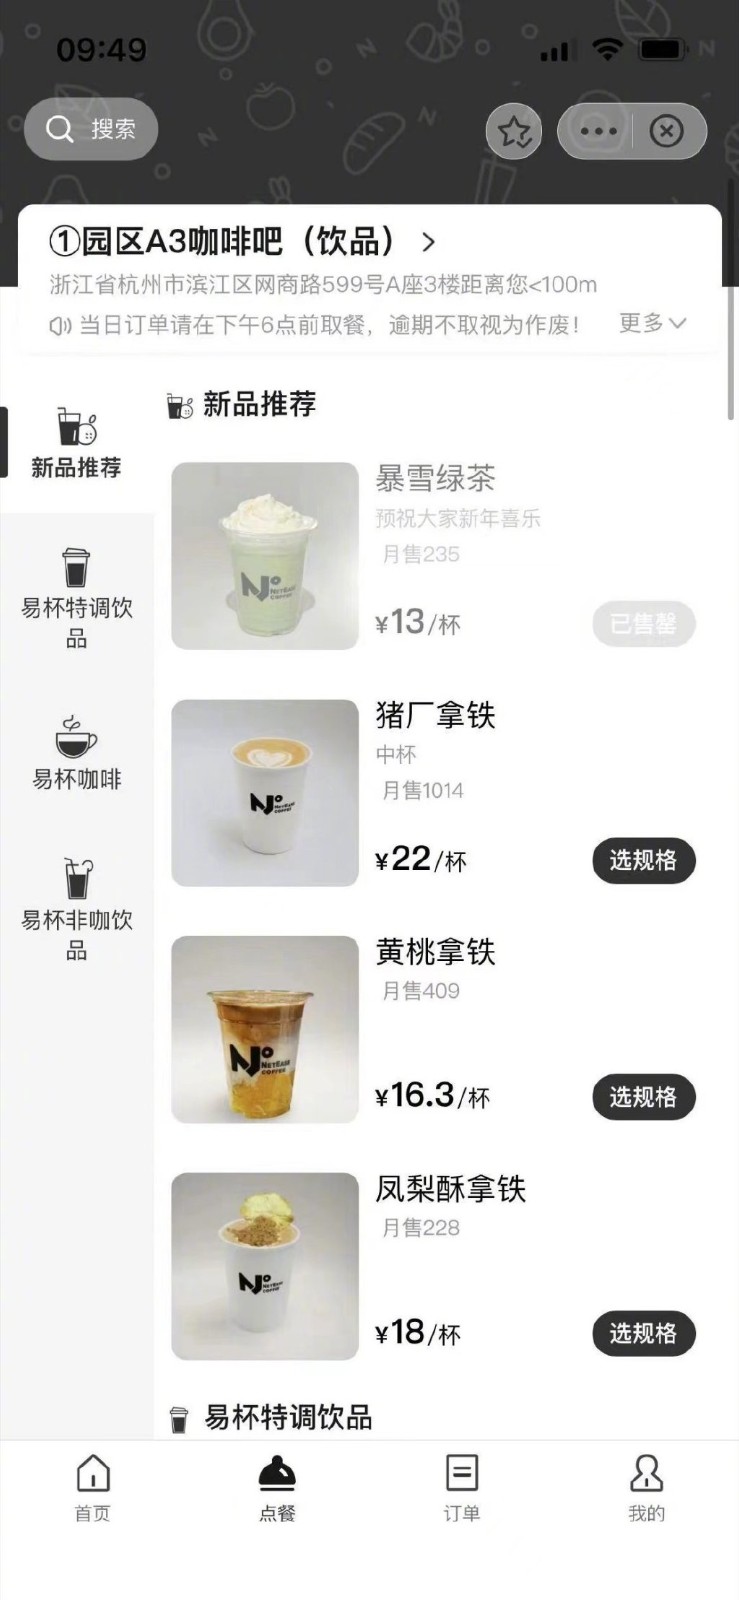 網傳網易咖啡廳推出“暴雪綠茶”飲品 訂單火爆已售罄